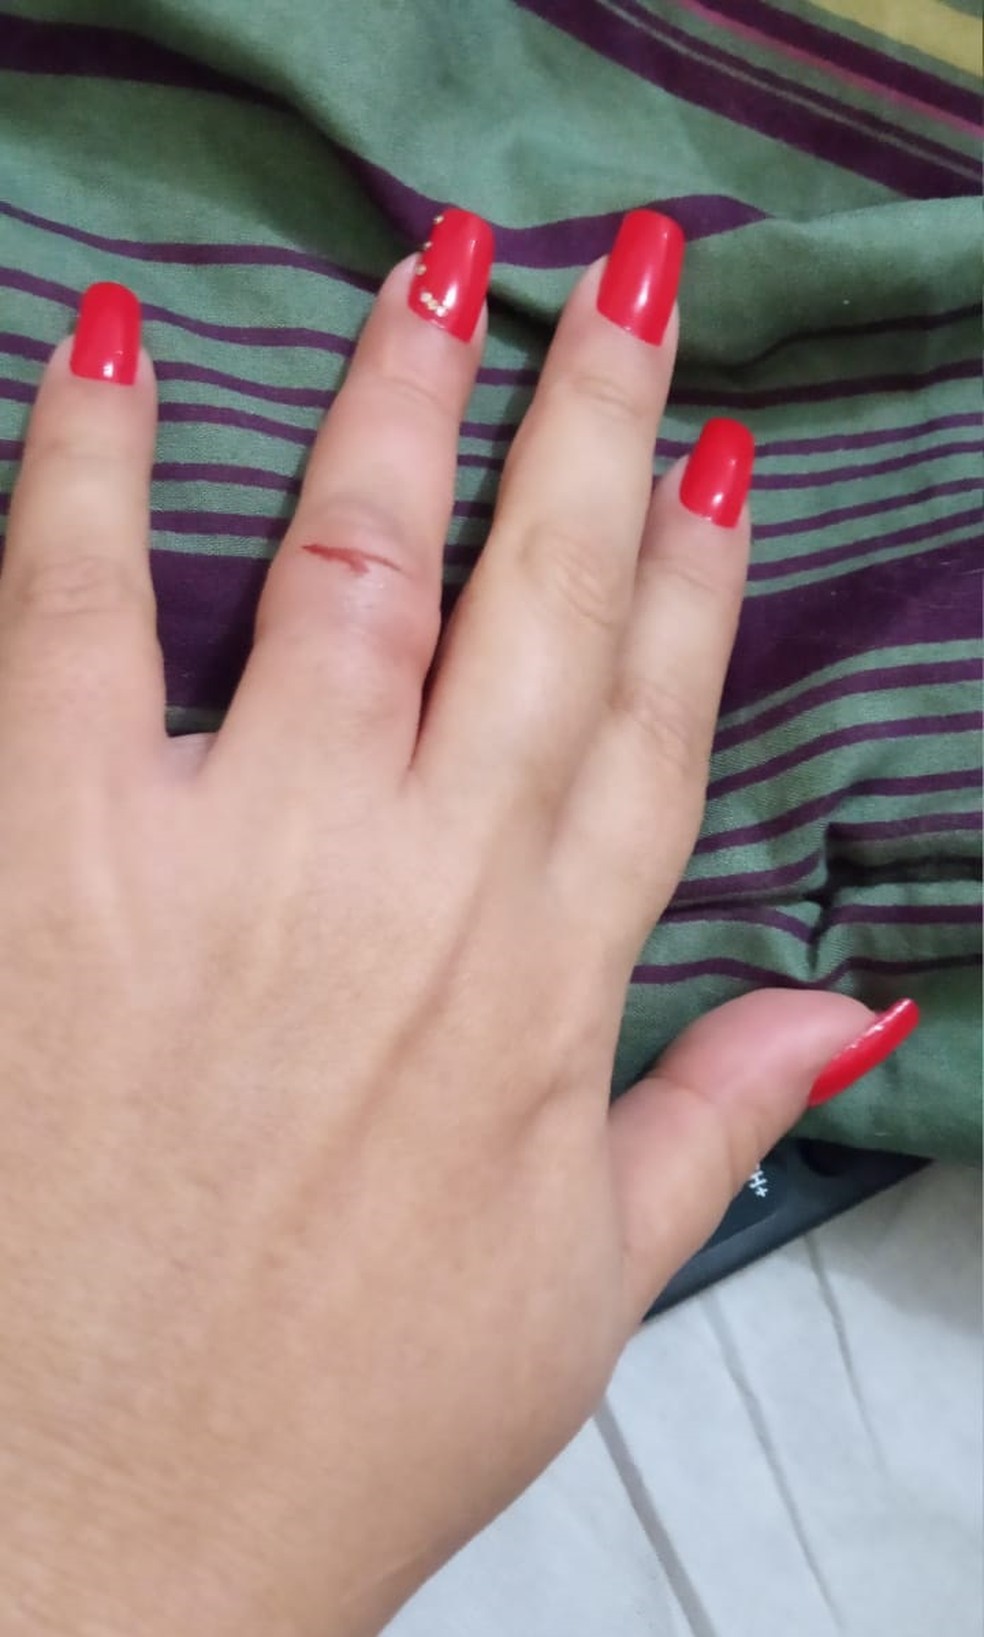 Dedo de mulher ficou machucado e inchado após assalto. — Foto: Arquivo pessoal